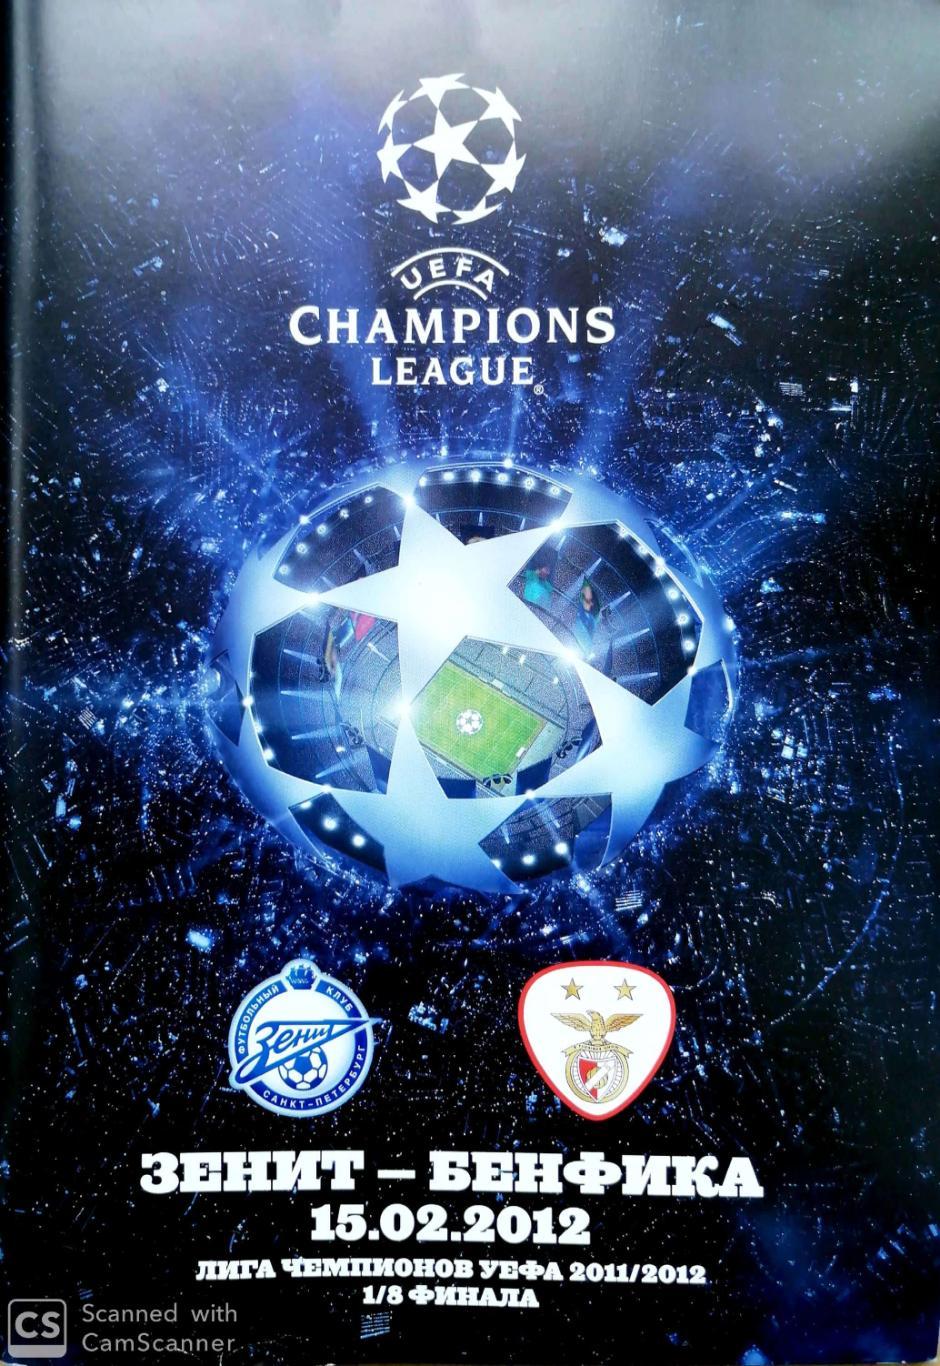 Лига чемпионов-2011/12. Зенит Россия - Бенфика Португалия (15.02.2012)